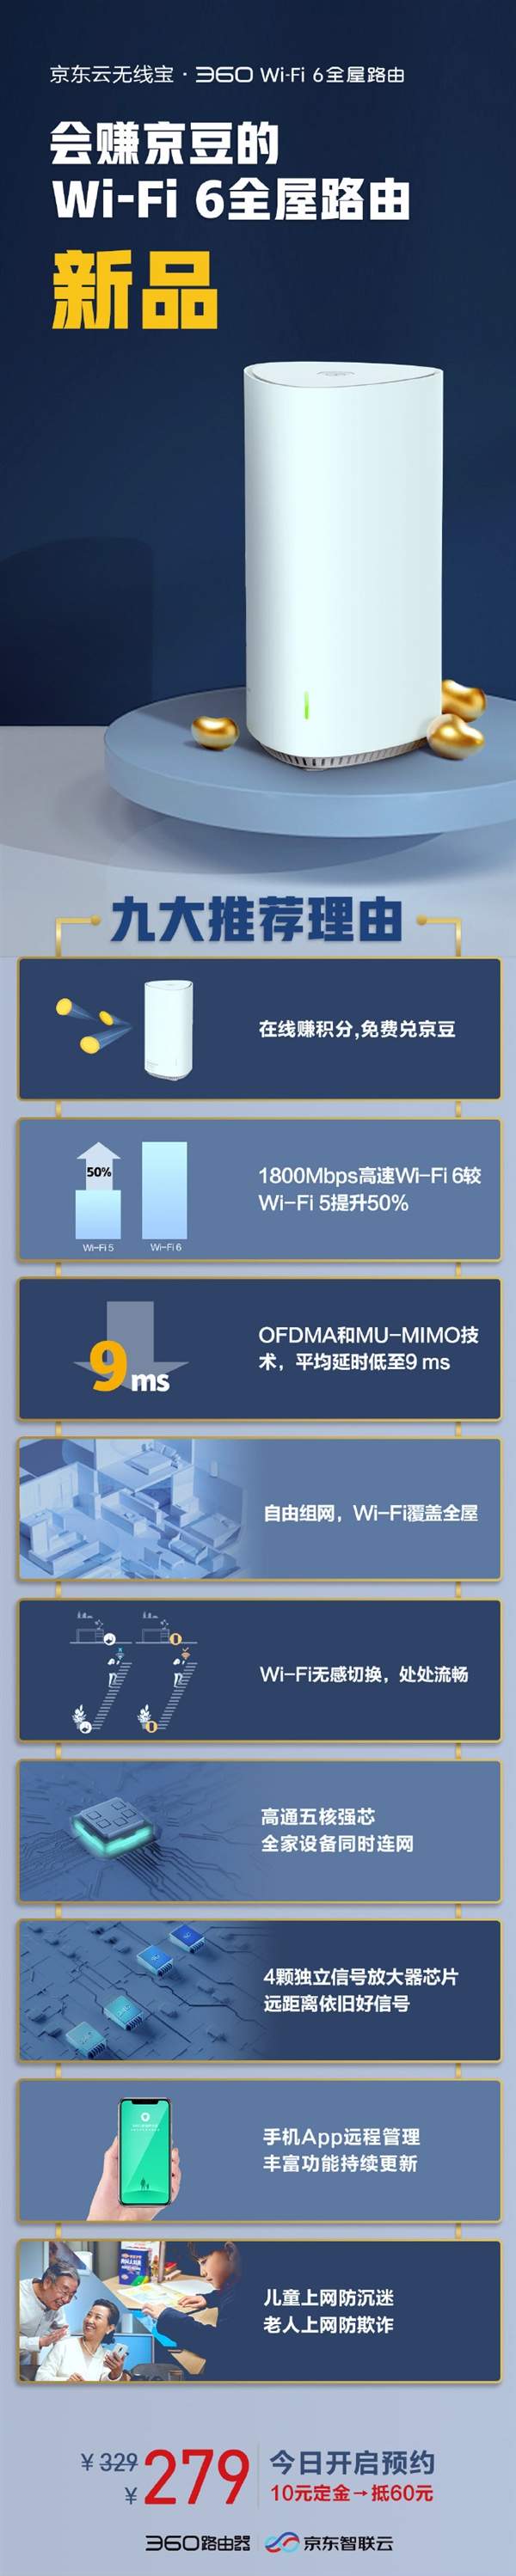 京东Wi-Fi6路由正式发布,首发价仅279元